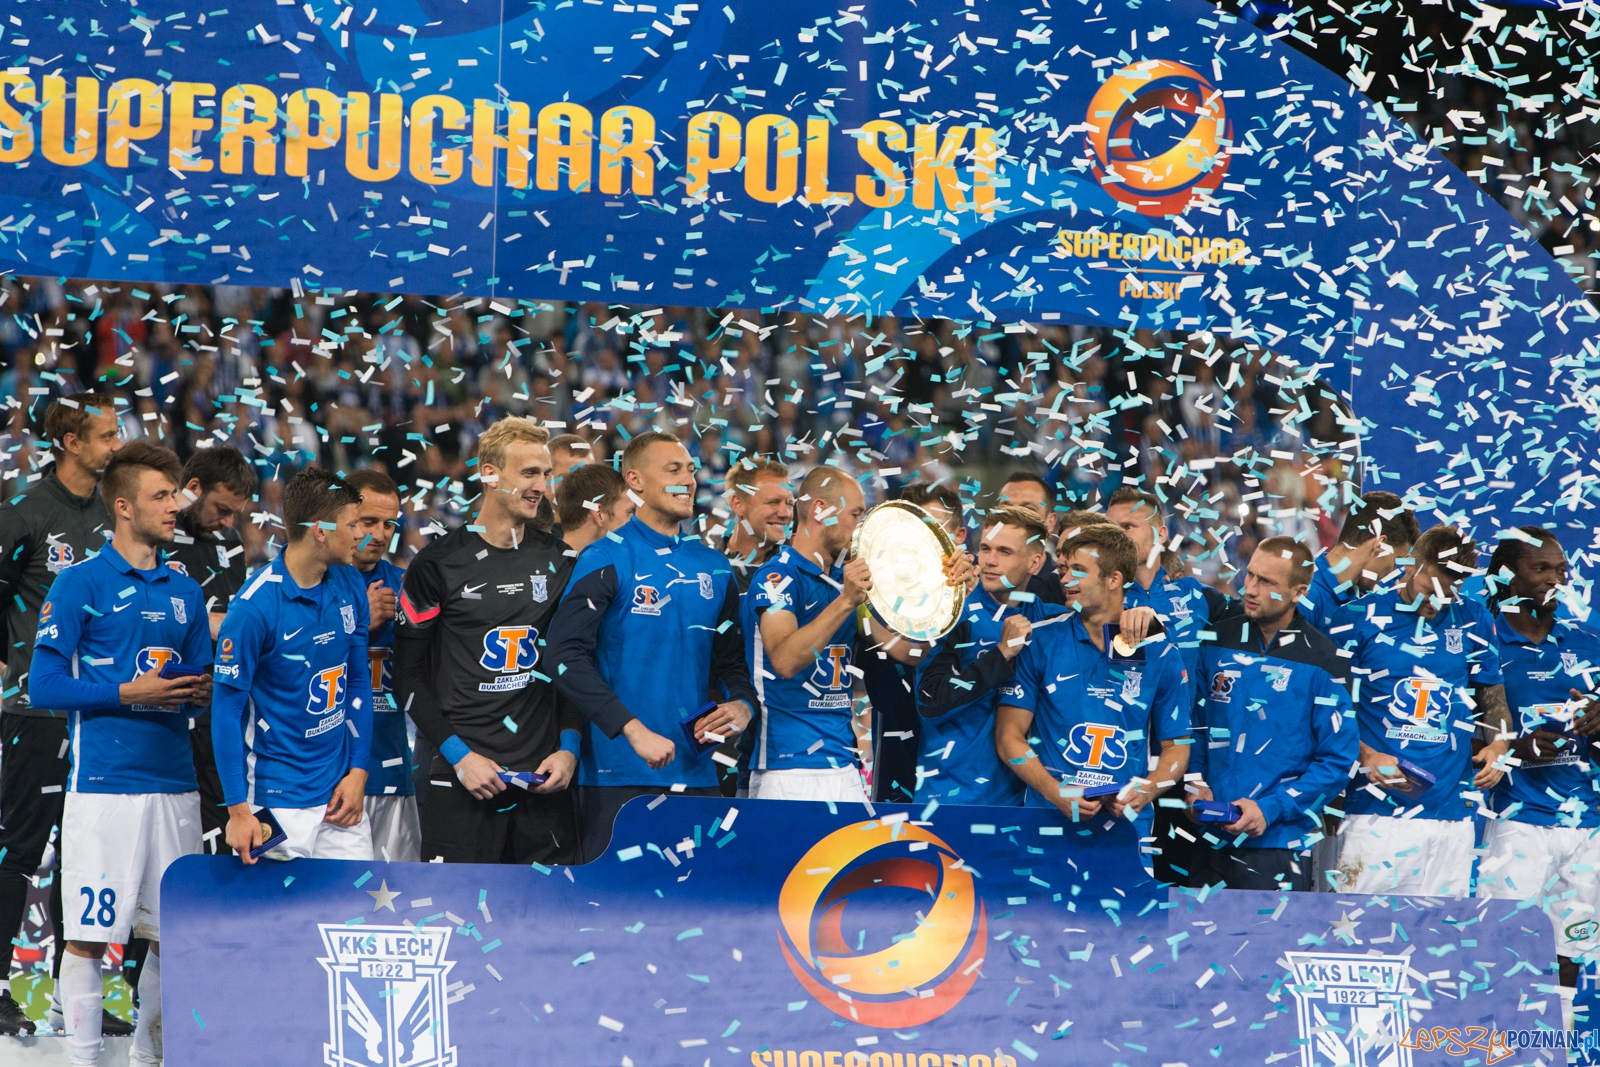 Superpuchar polski 2015 - Lech Poznań - Legia Warszawa  Foto: lepszyPOZNAN.pl / Piotr Rychter